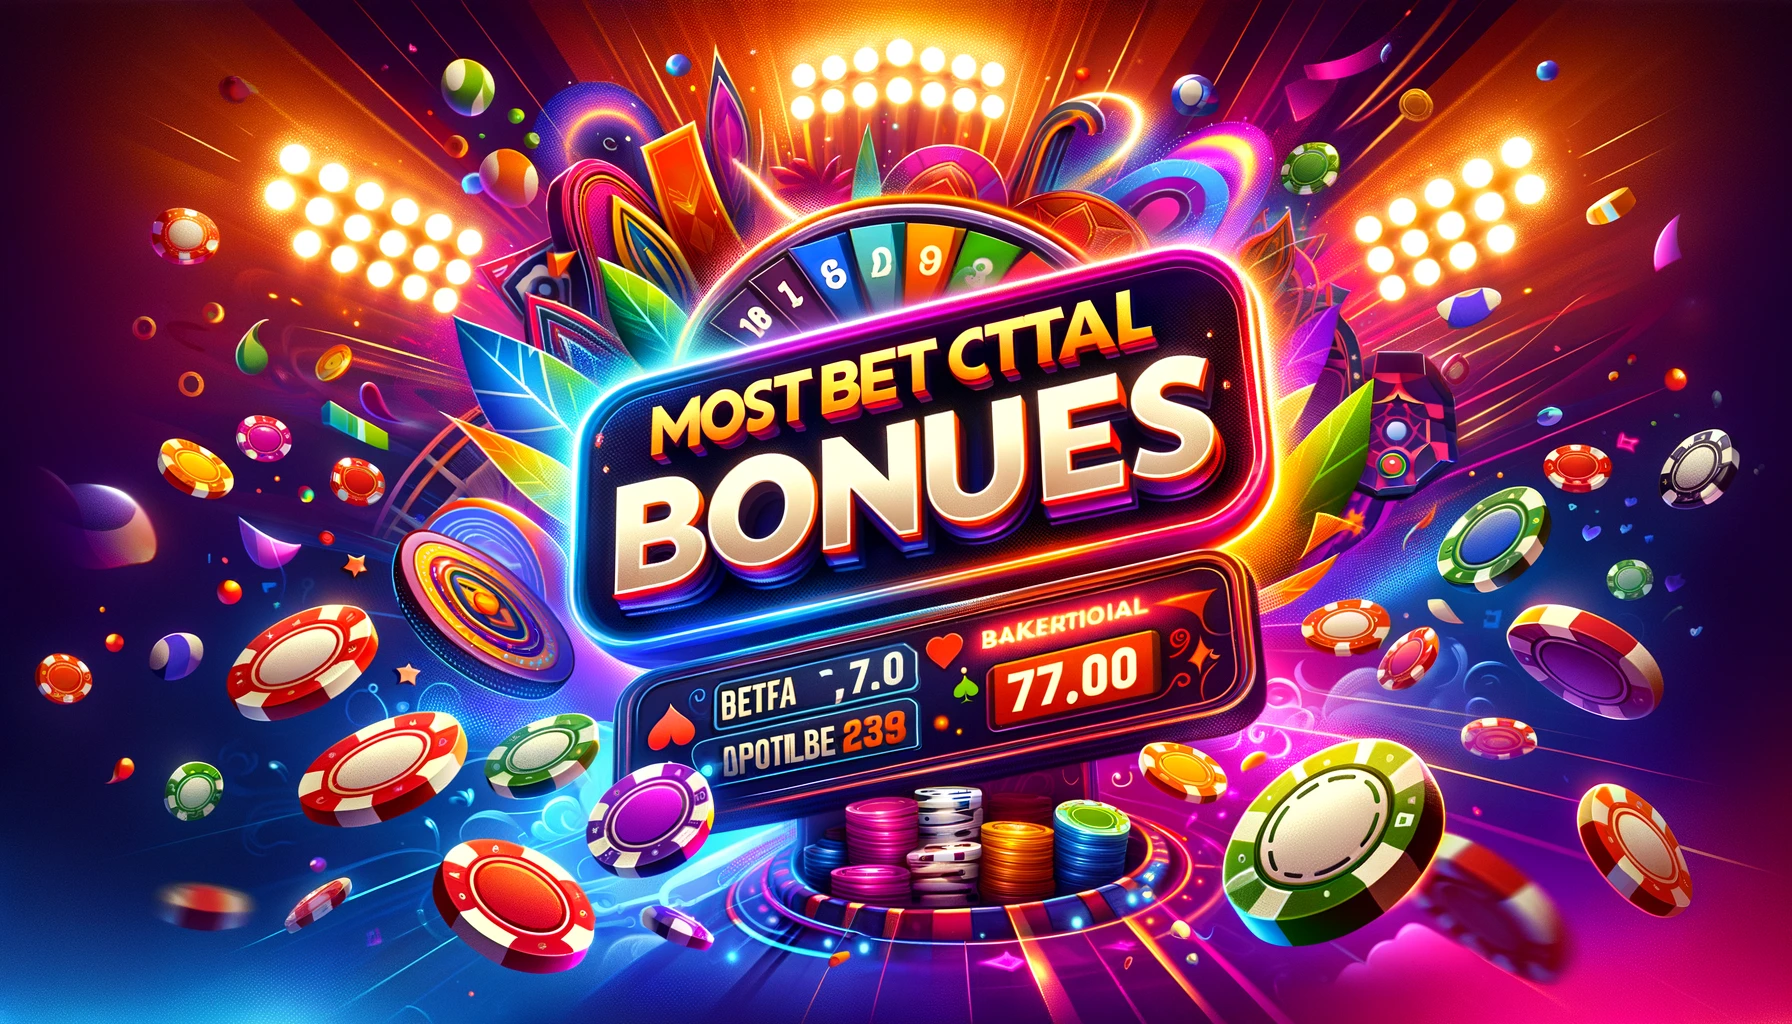 Sexy Онлайн-казино Мостбет Россия: игры, ставки, бонусы